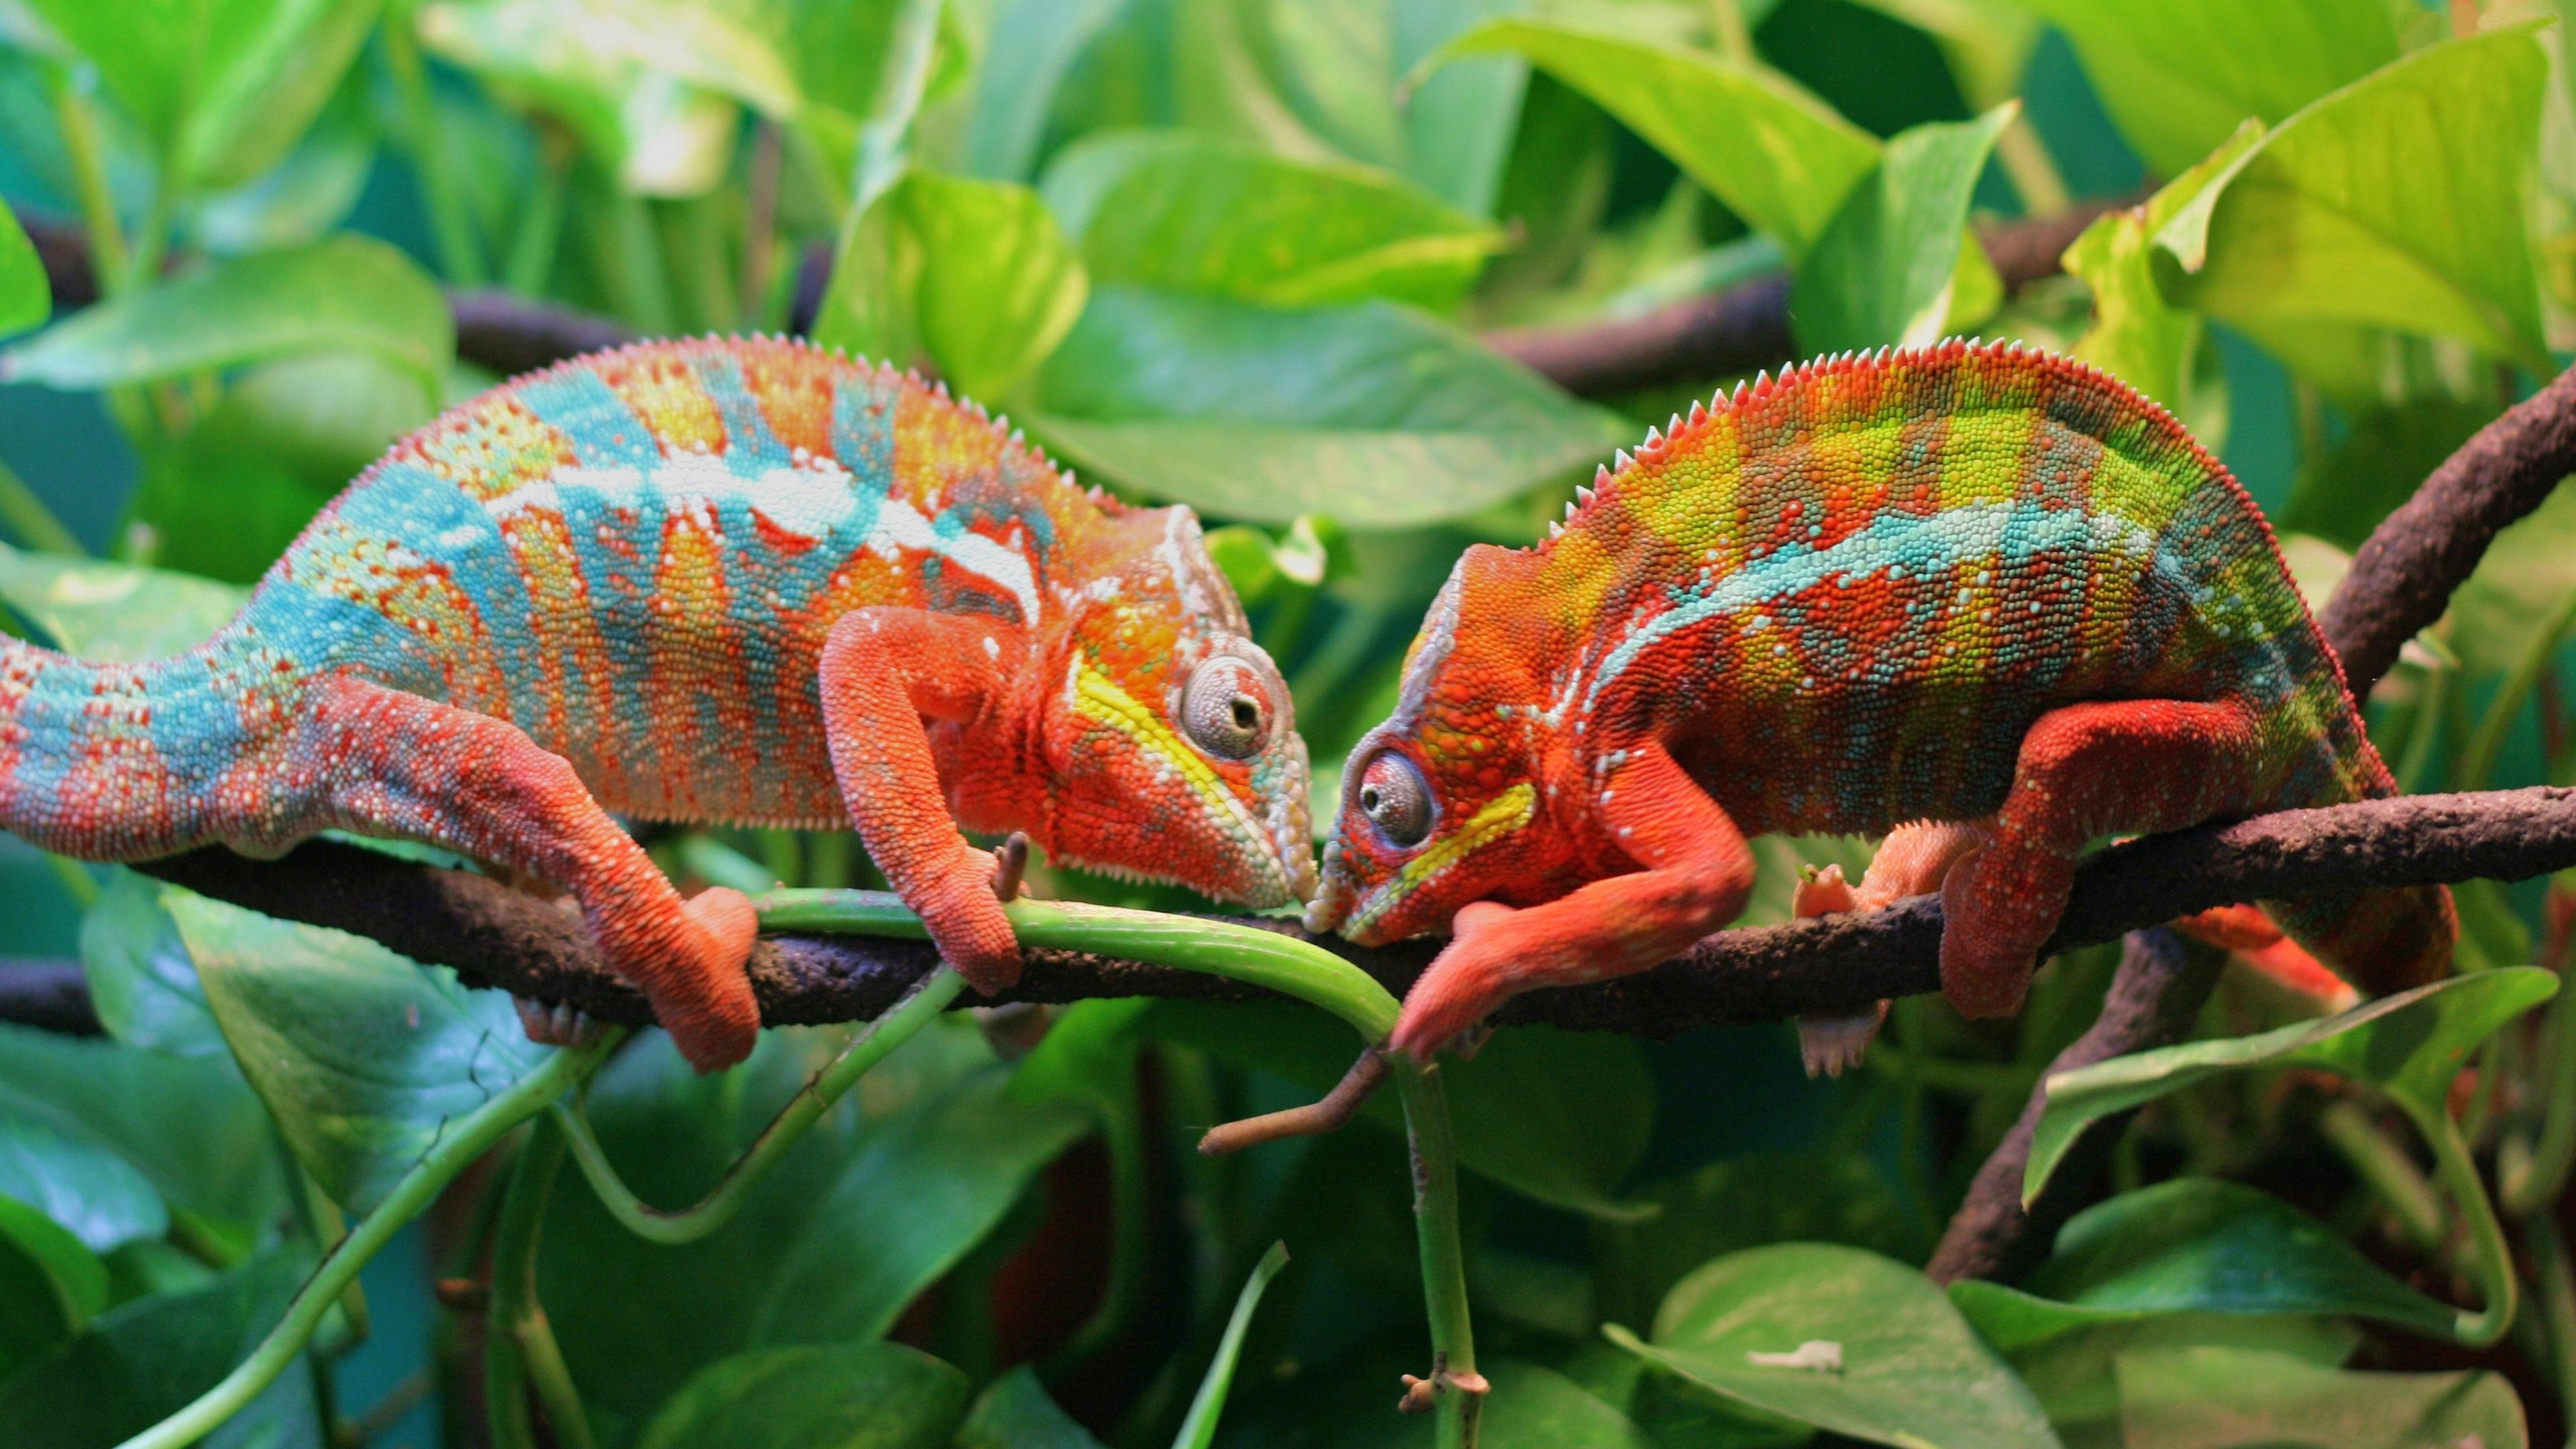 Two Chameleons On A Tree 4K UltraHD Wallpaper. Wallpaper Studio 10